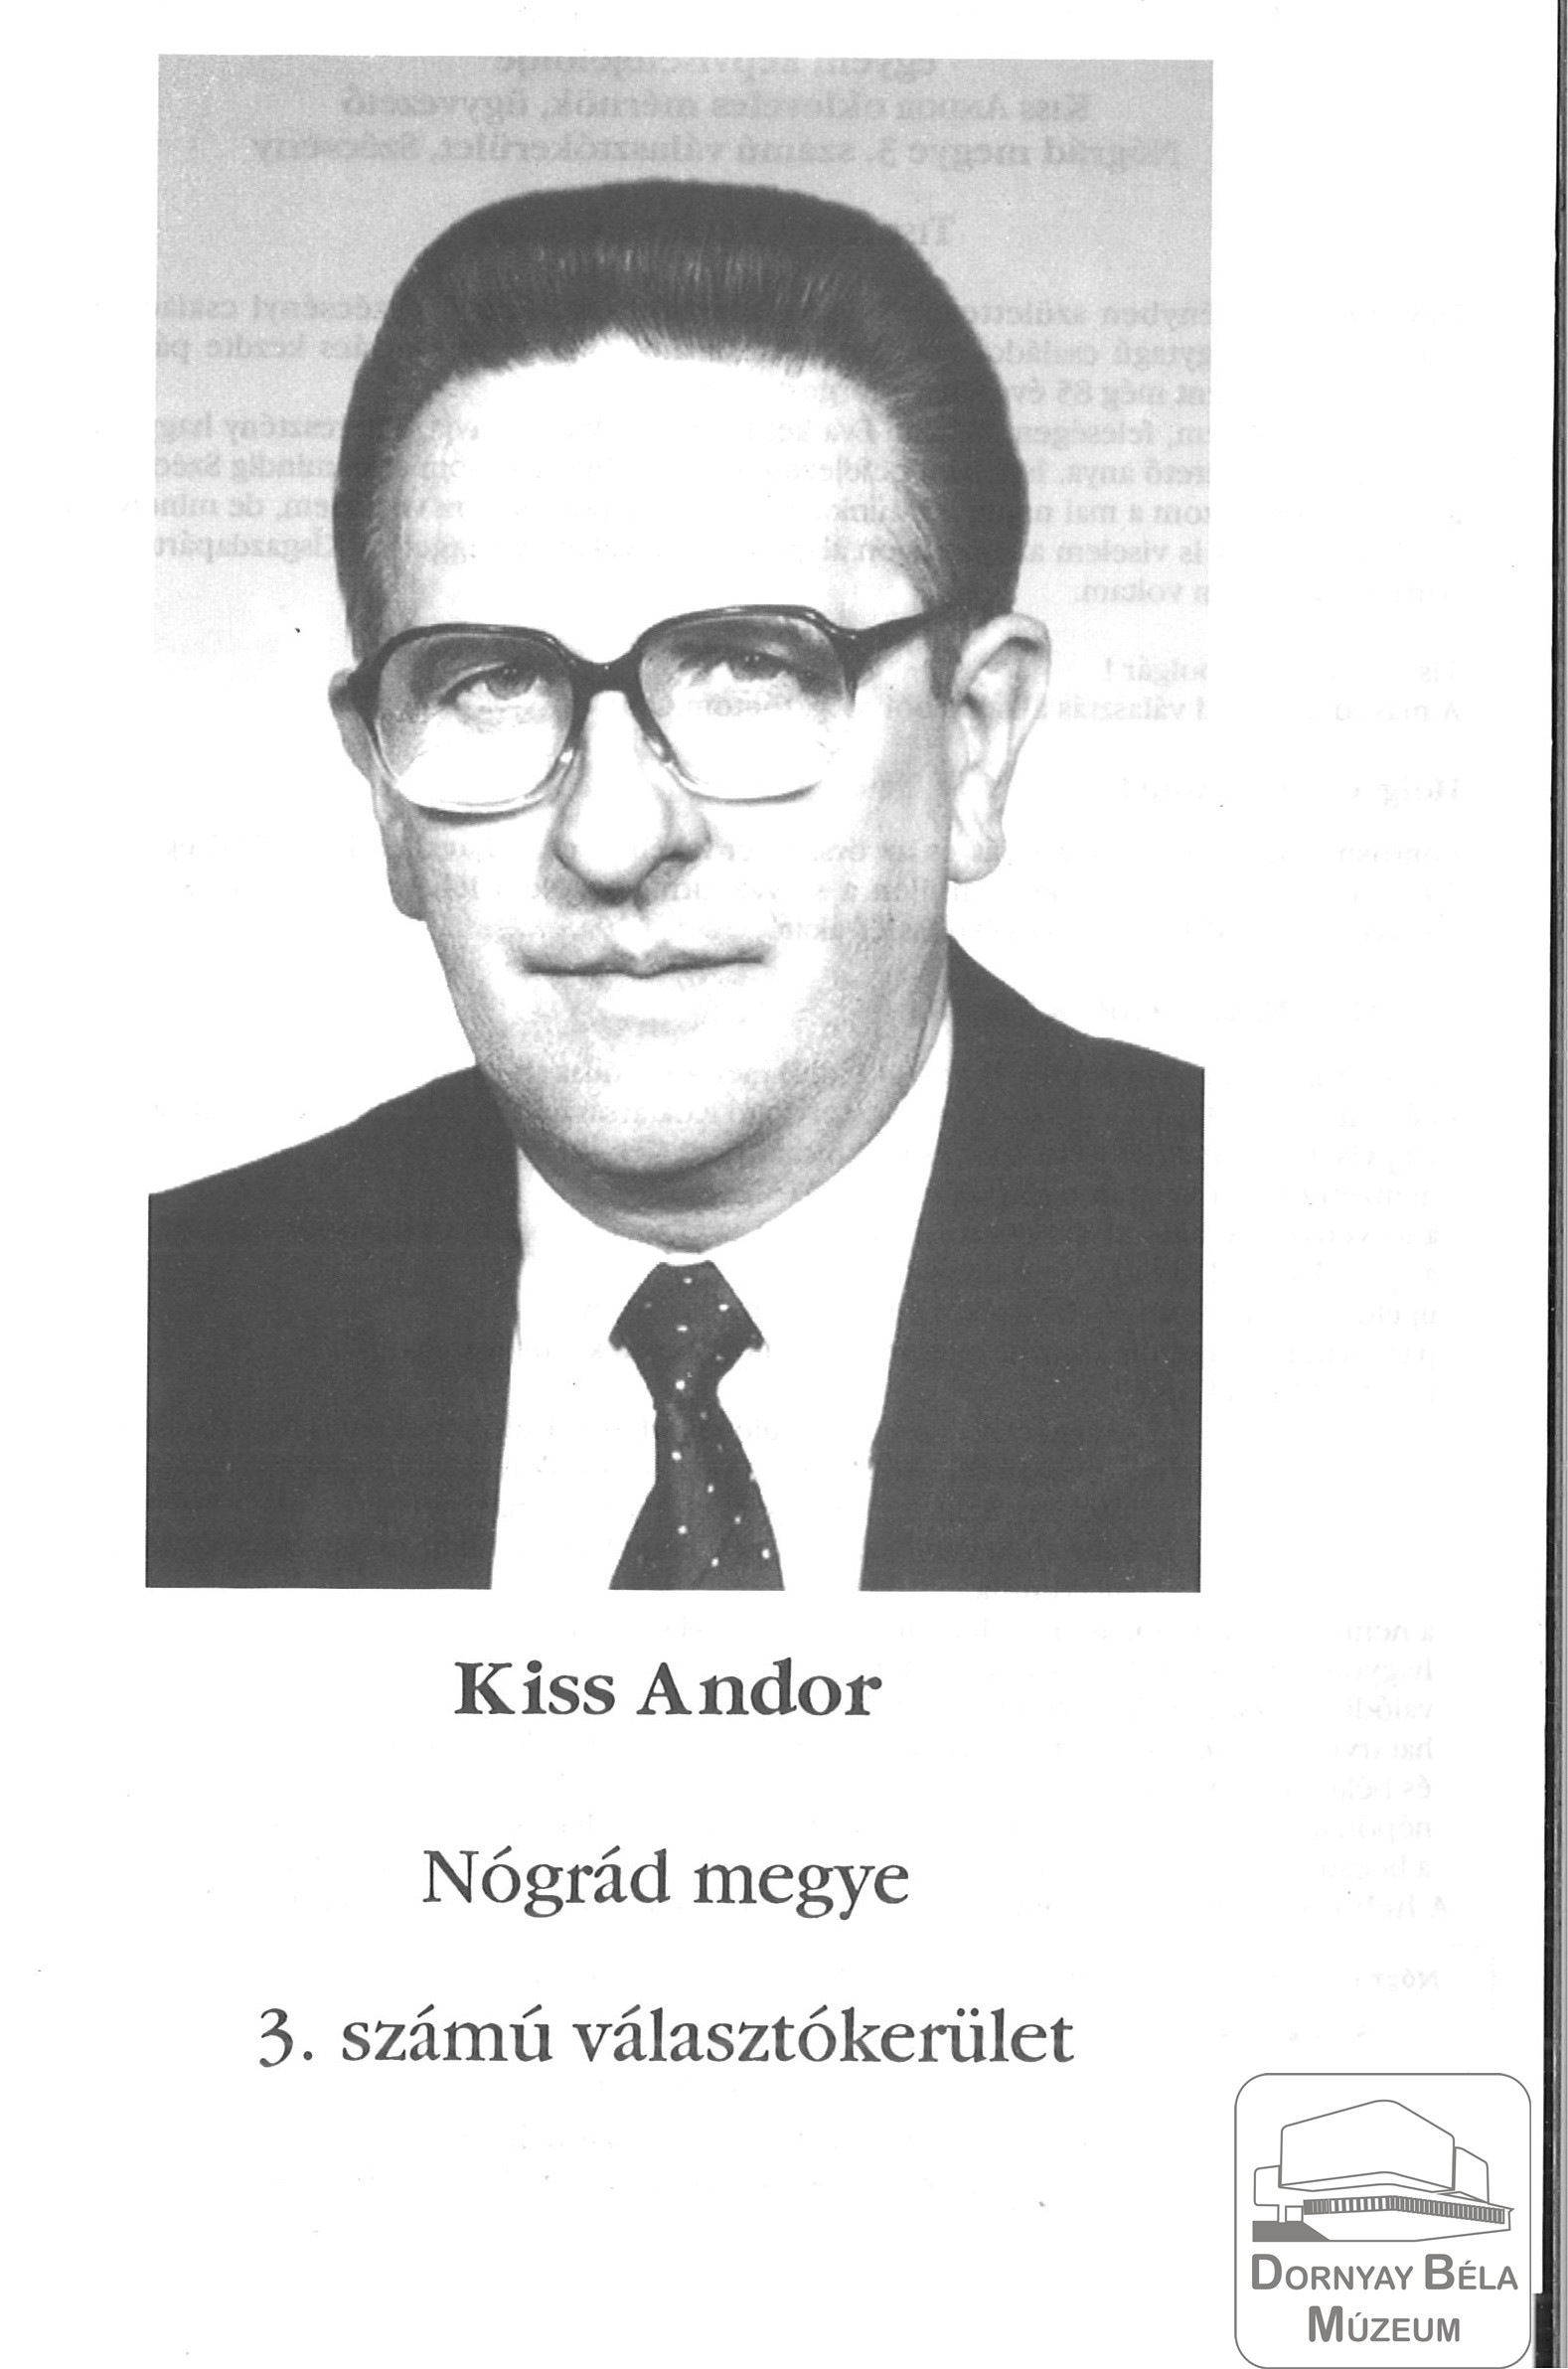 Kiss Andor Nógrád megye 3.sz. Választókerület FKGP jelöltjének fényképe (Dornyay Béla Múzeum, Salgótarján CC BY-NC-SA)